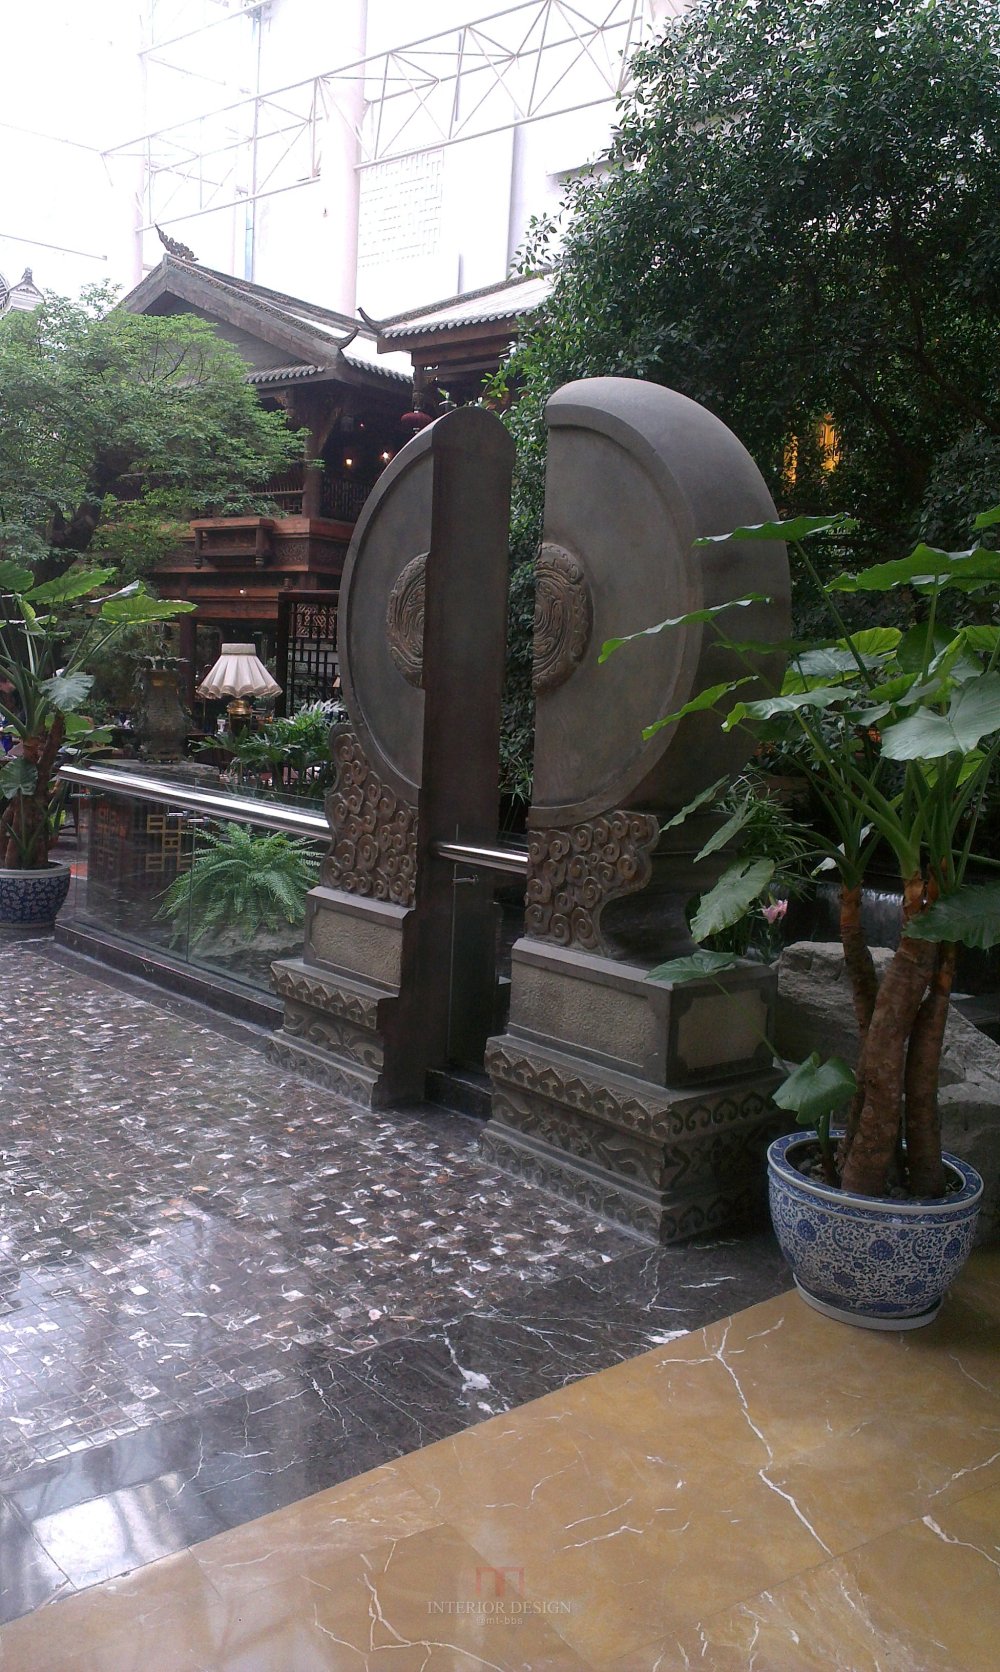 成都洲际酒店(InterContinental chengdu)(LEGEND)_IMAG0362.jpg